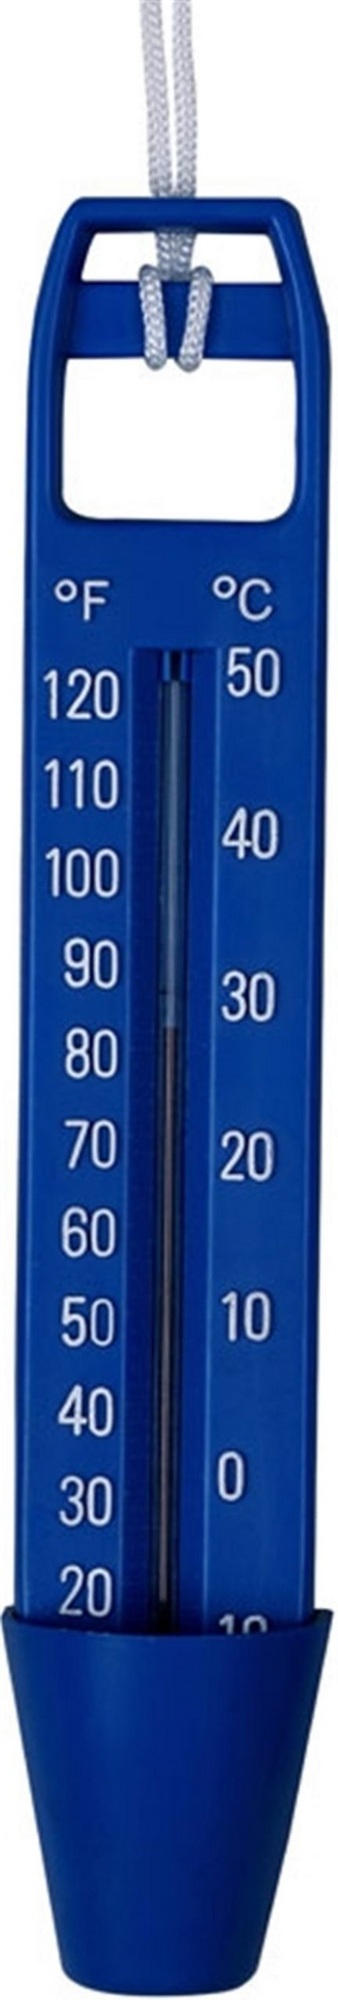 Термометр Poolmagic 10 quot; TH02BU / TH02BB